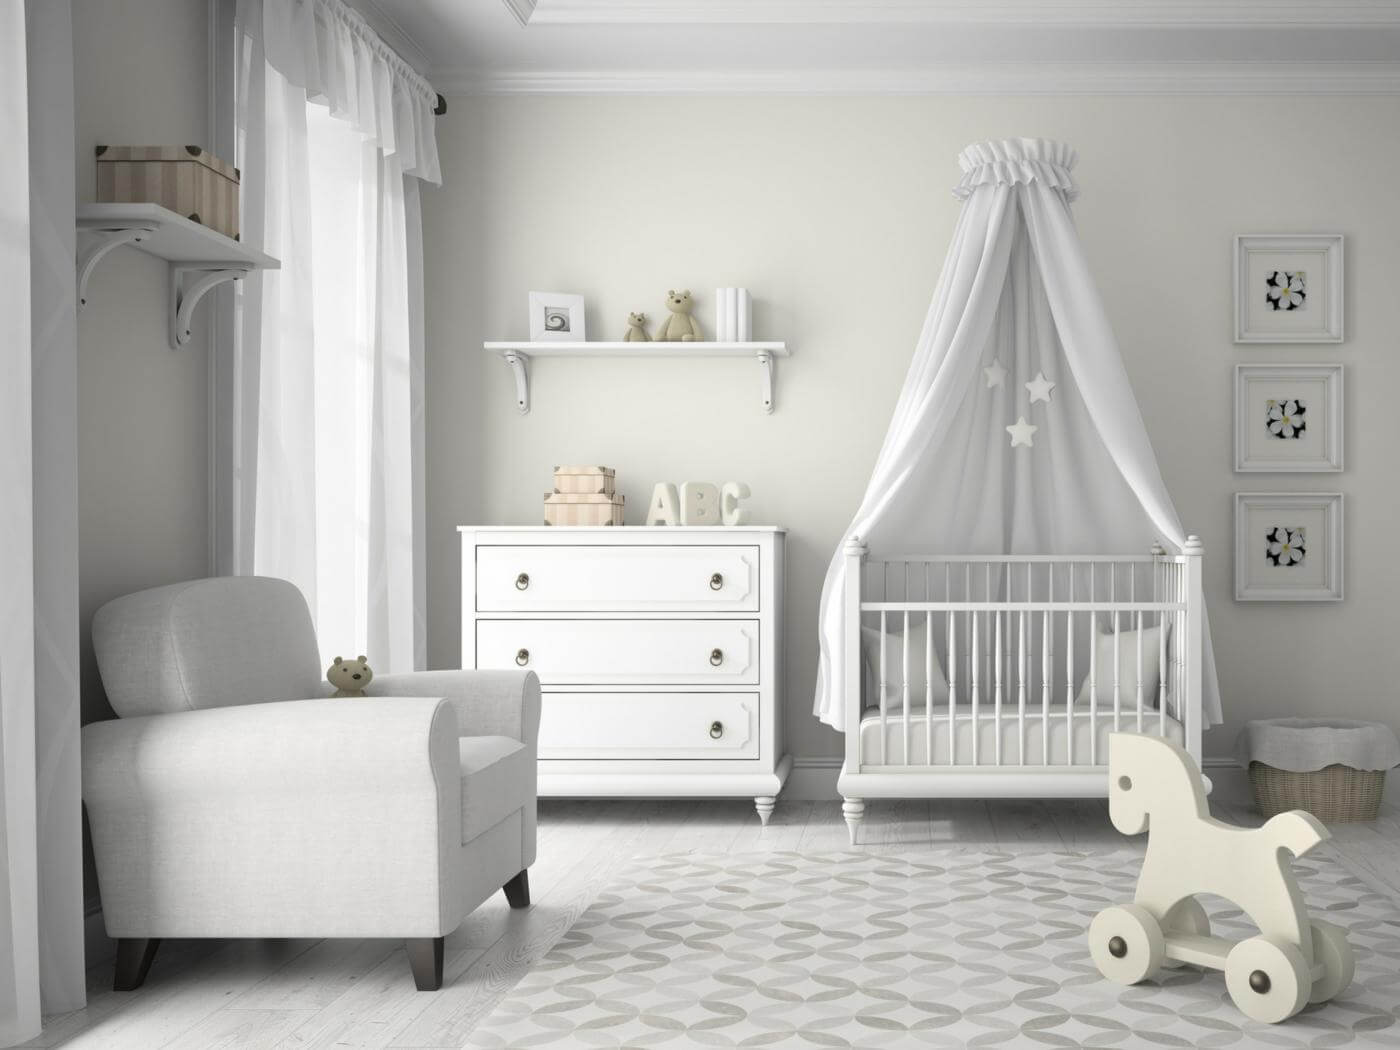 Рейтинг топ-10 детских кроваток для новорожденных по версии КП